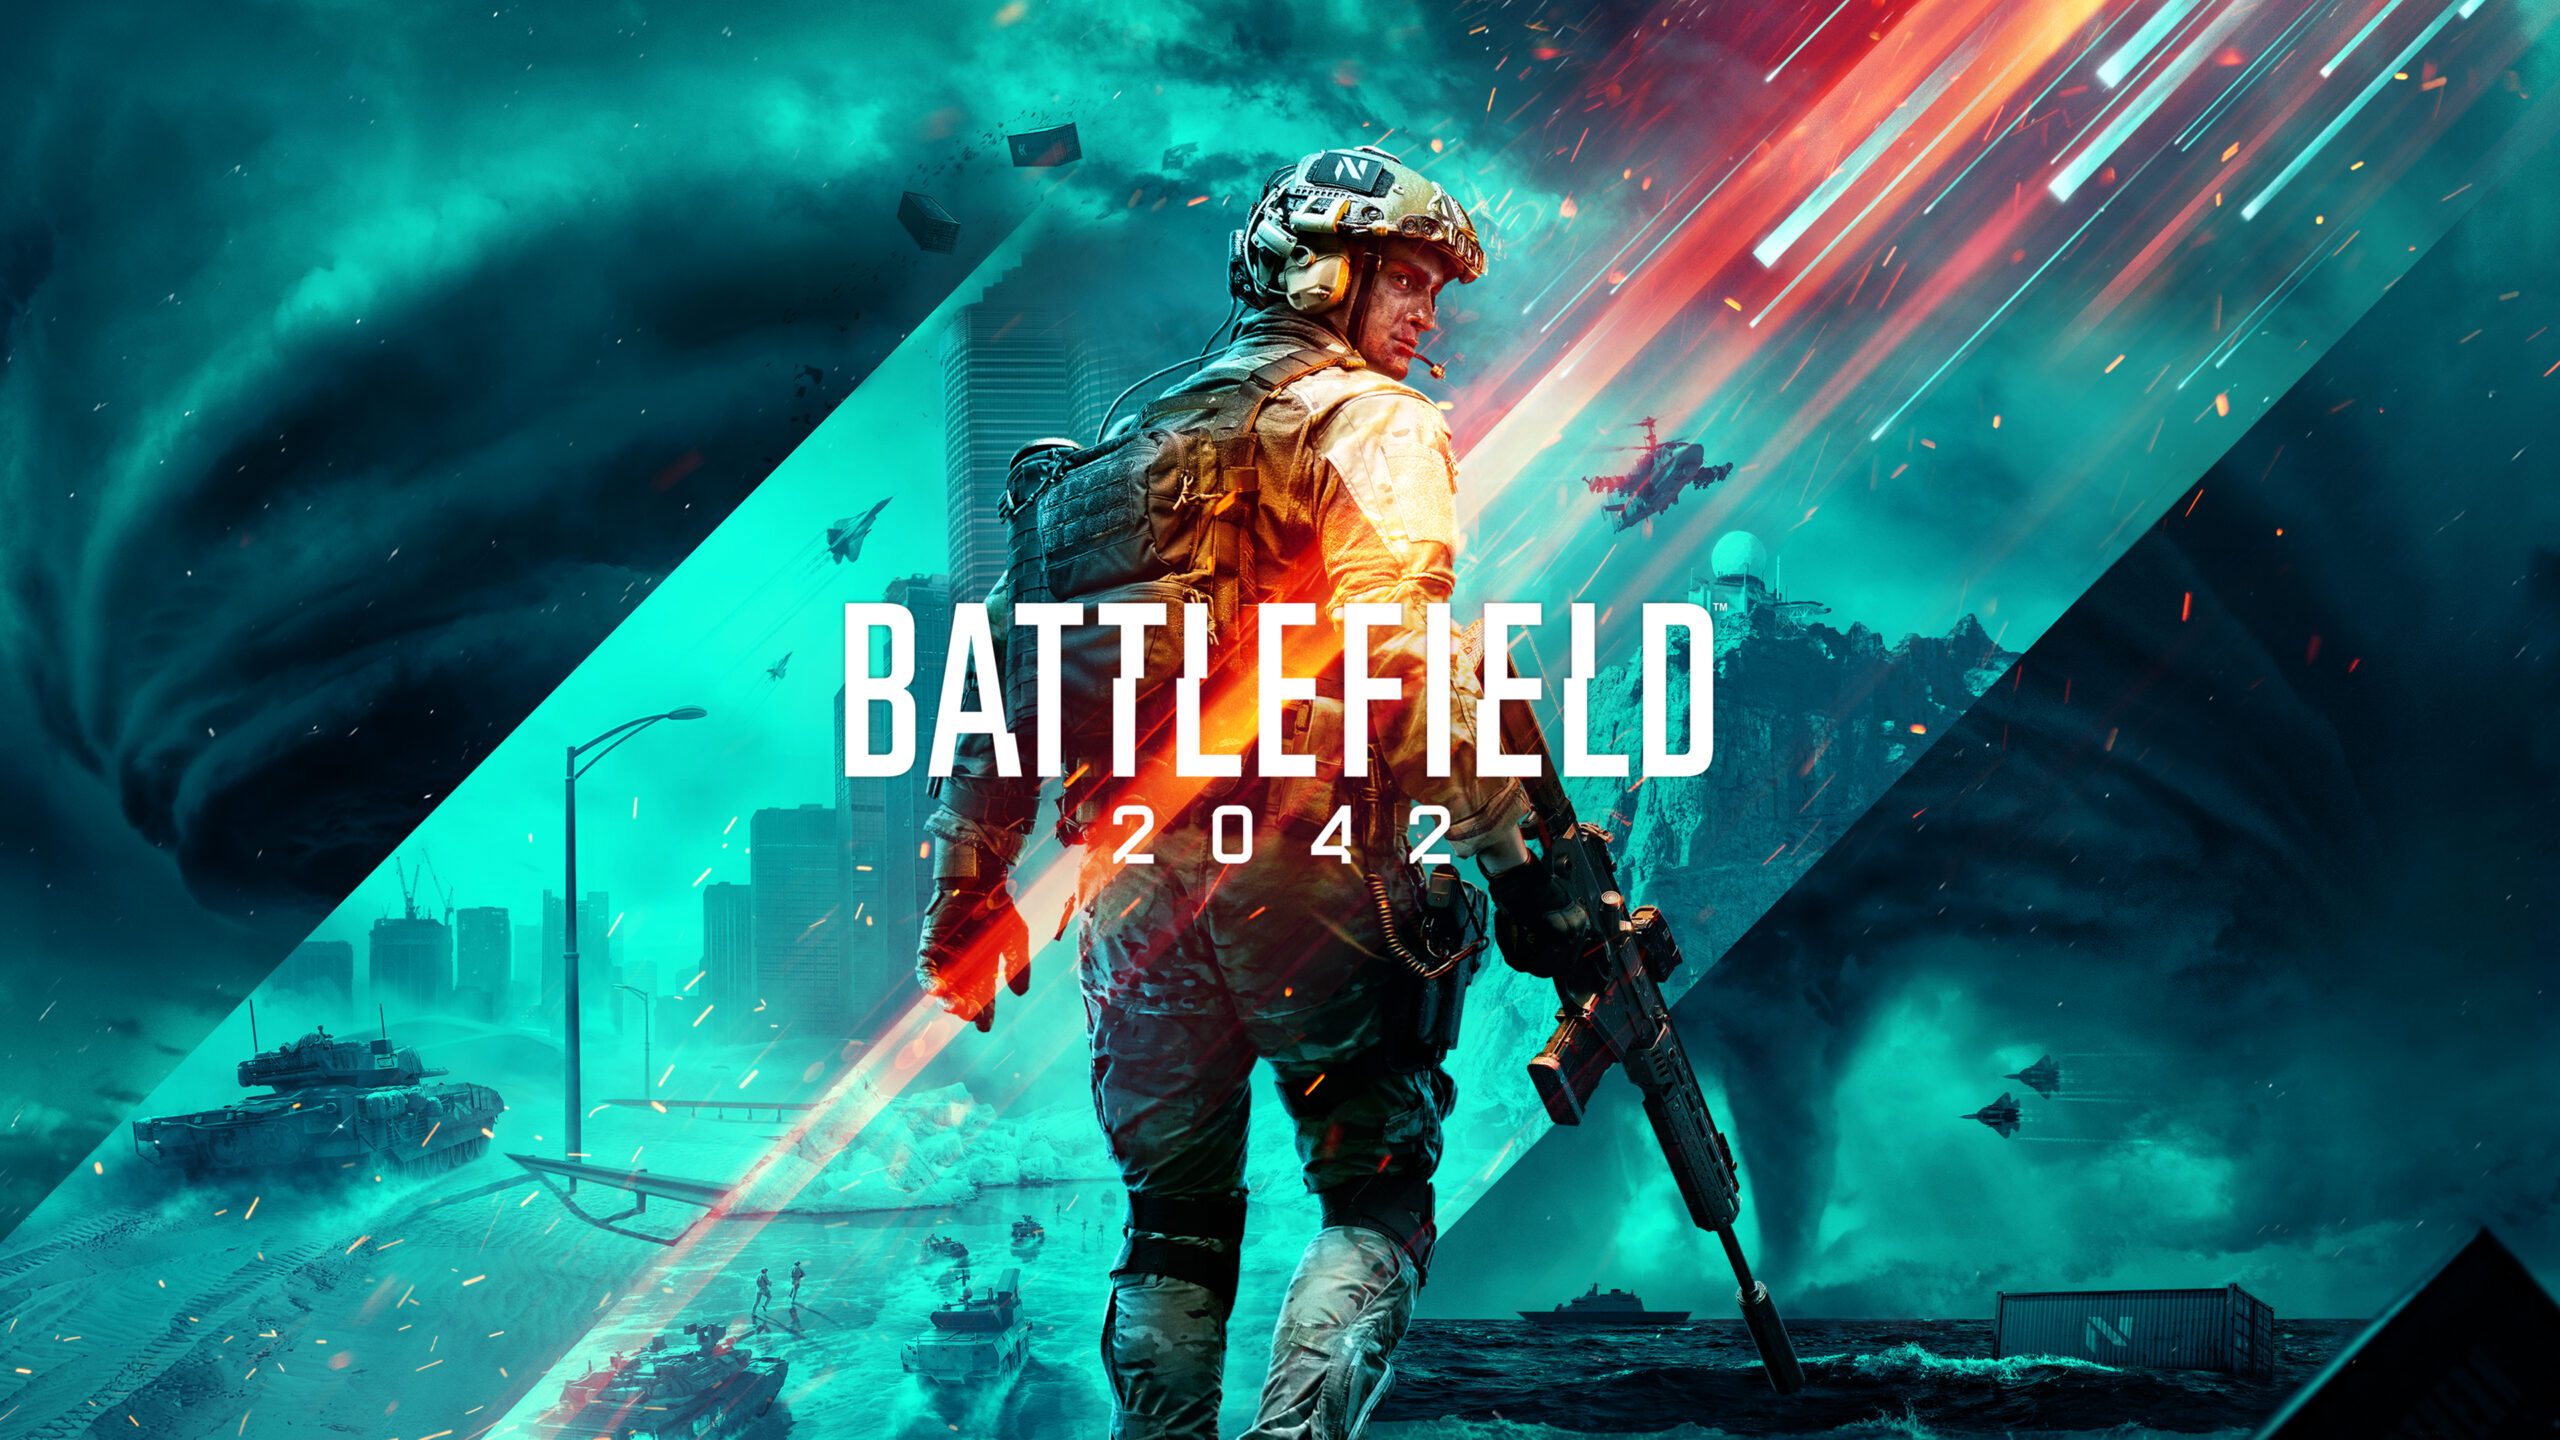 Jogos mensais PlayStation Plus para março: Battlefield 2042